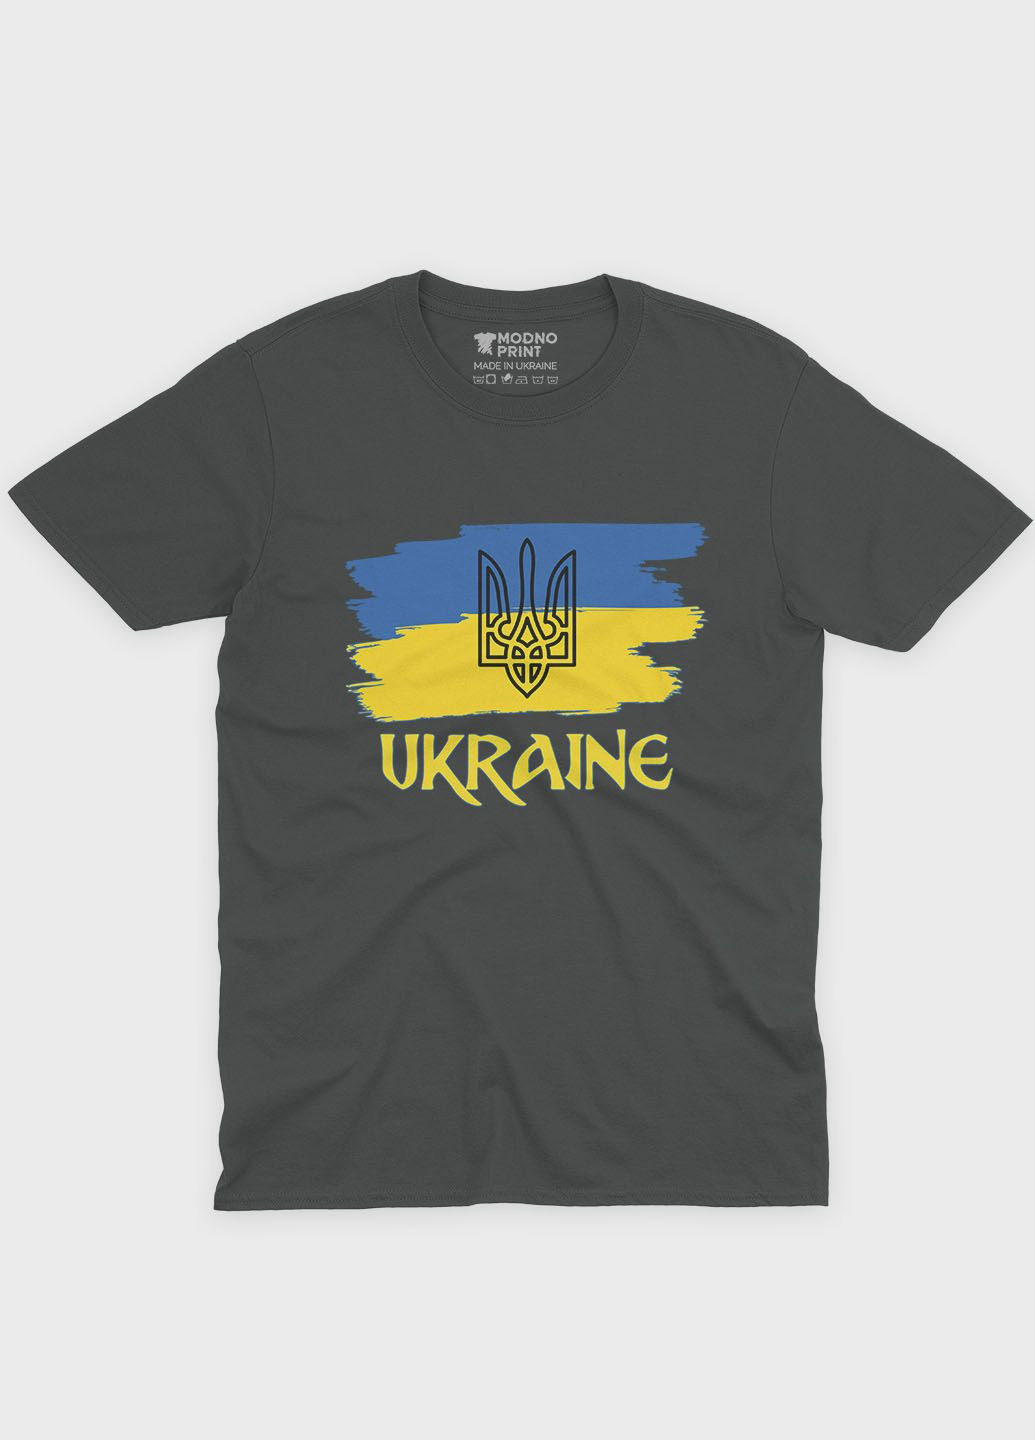 Темно-серая мужская футболка с патриотическим принтом ukraine (ts001-3-slg-005-1-070) Modno